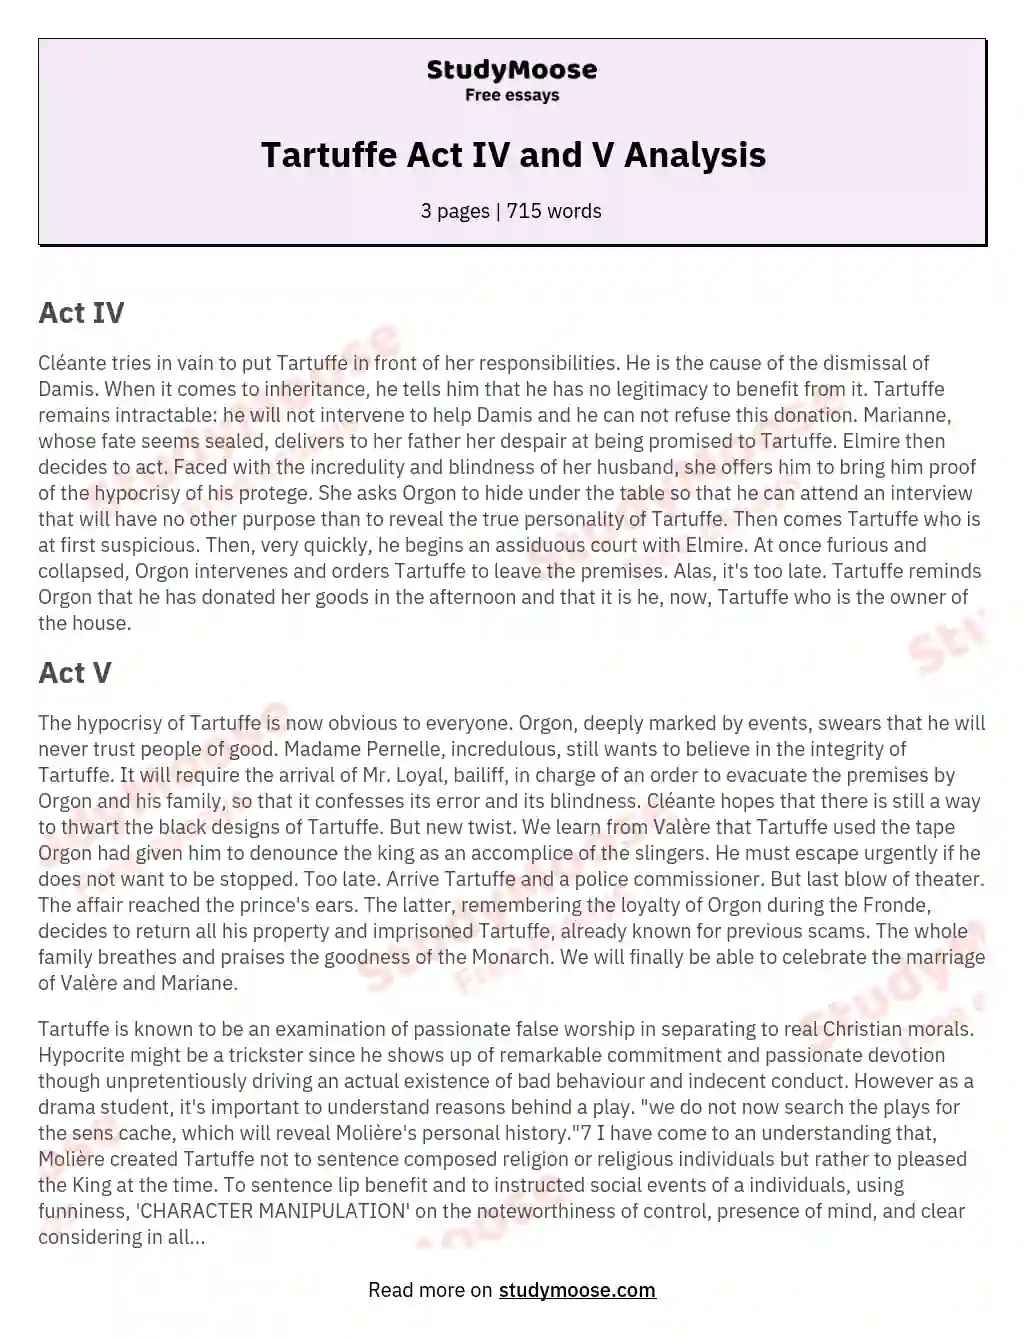 Tartuffe Act IV and V Analysis essay